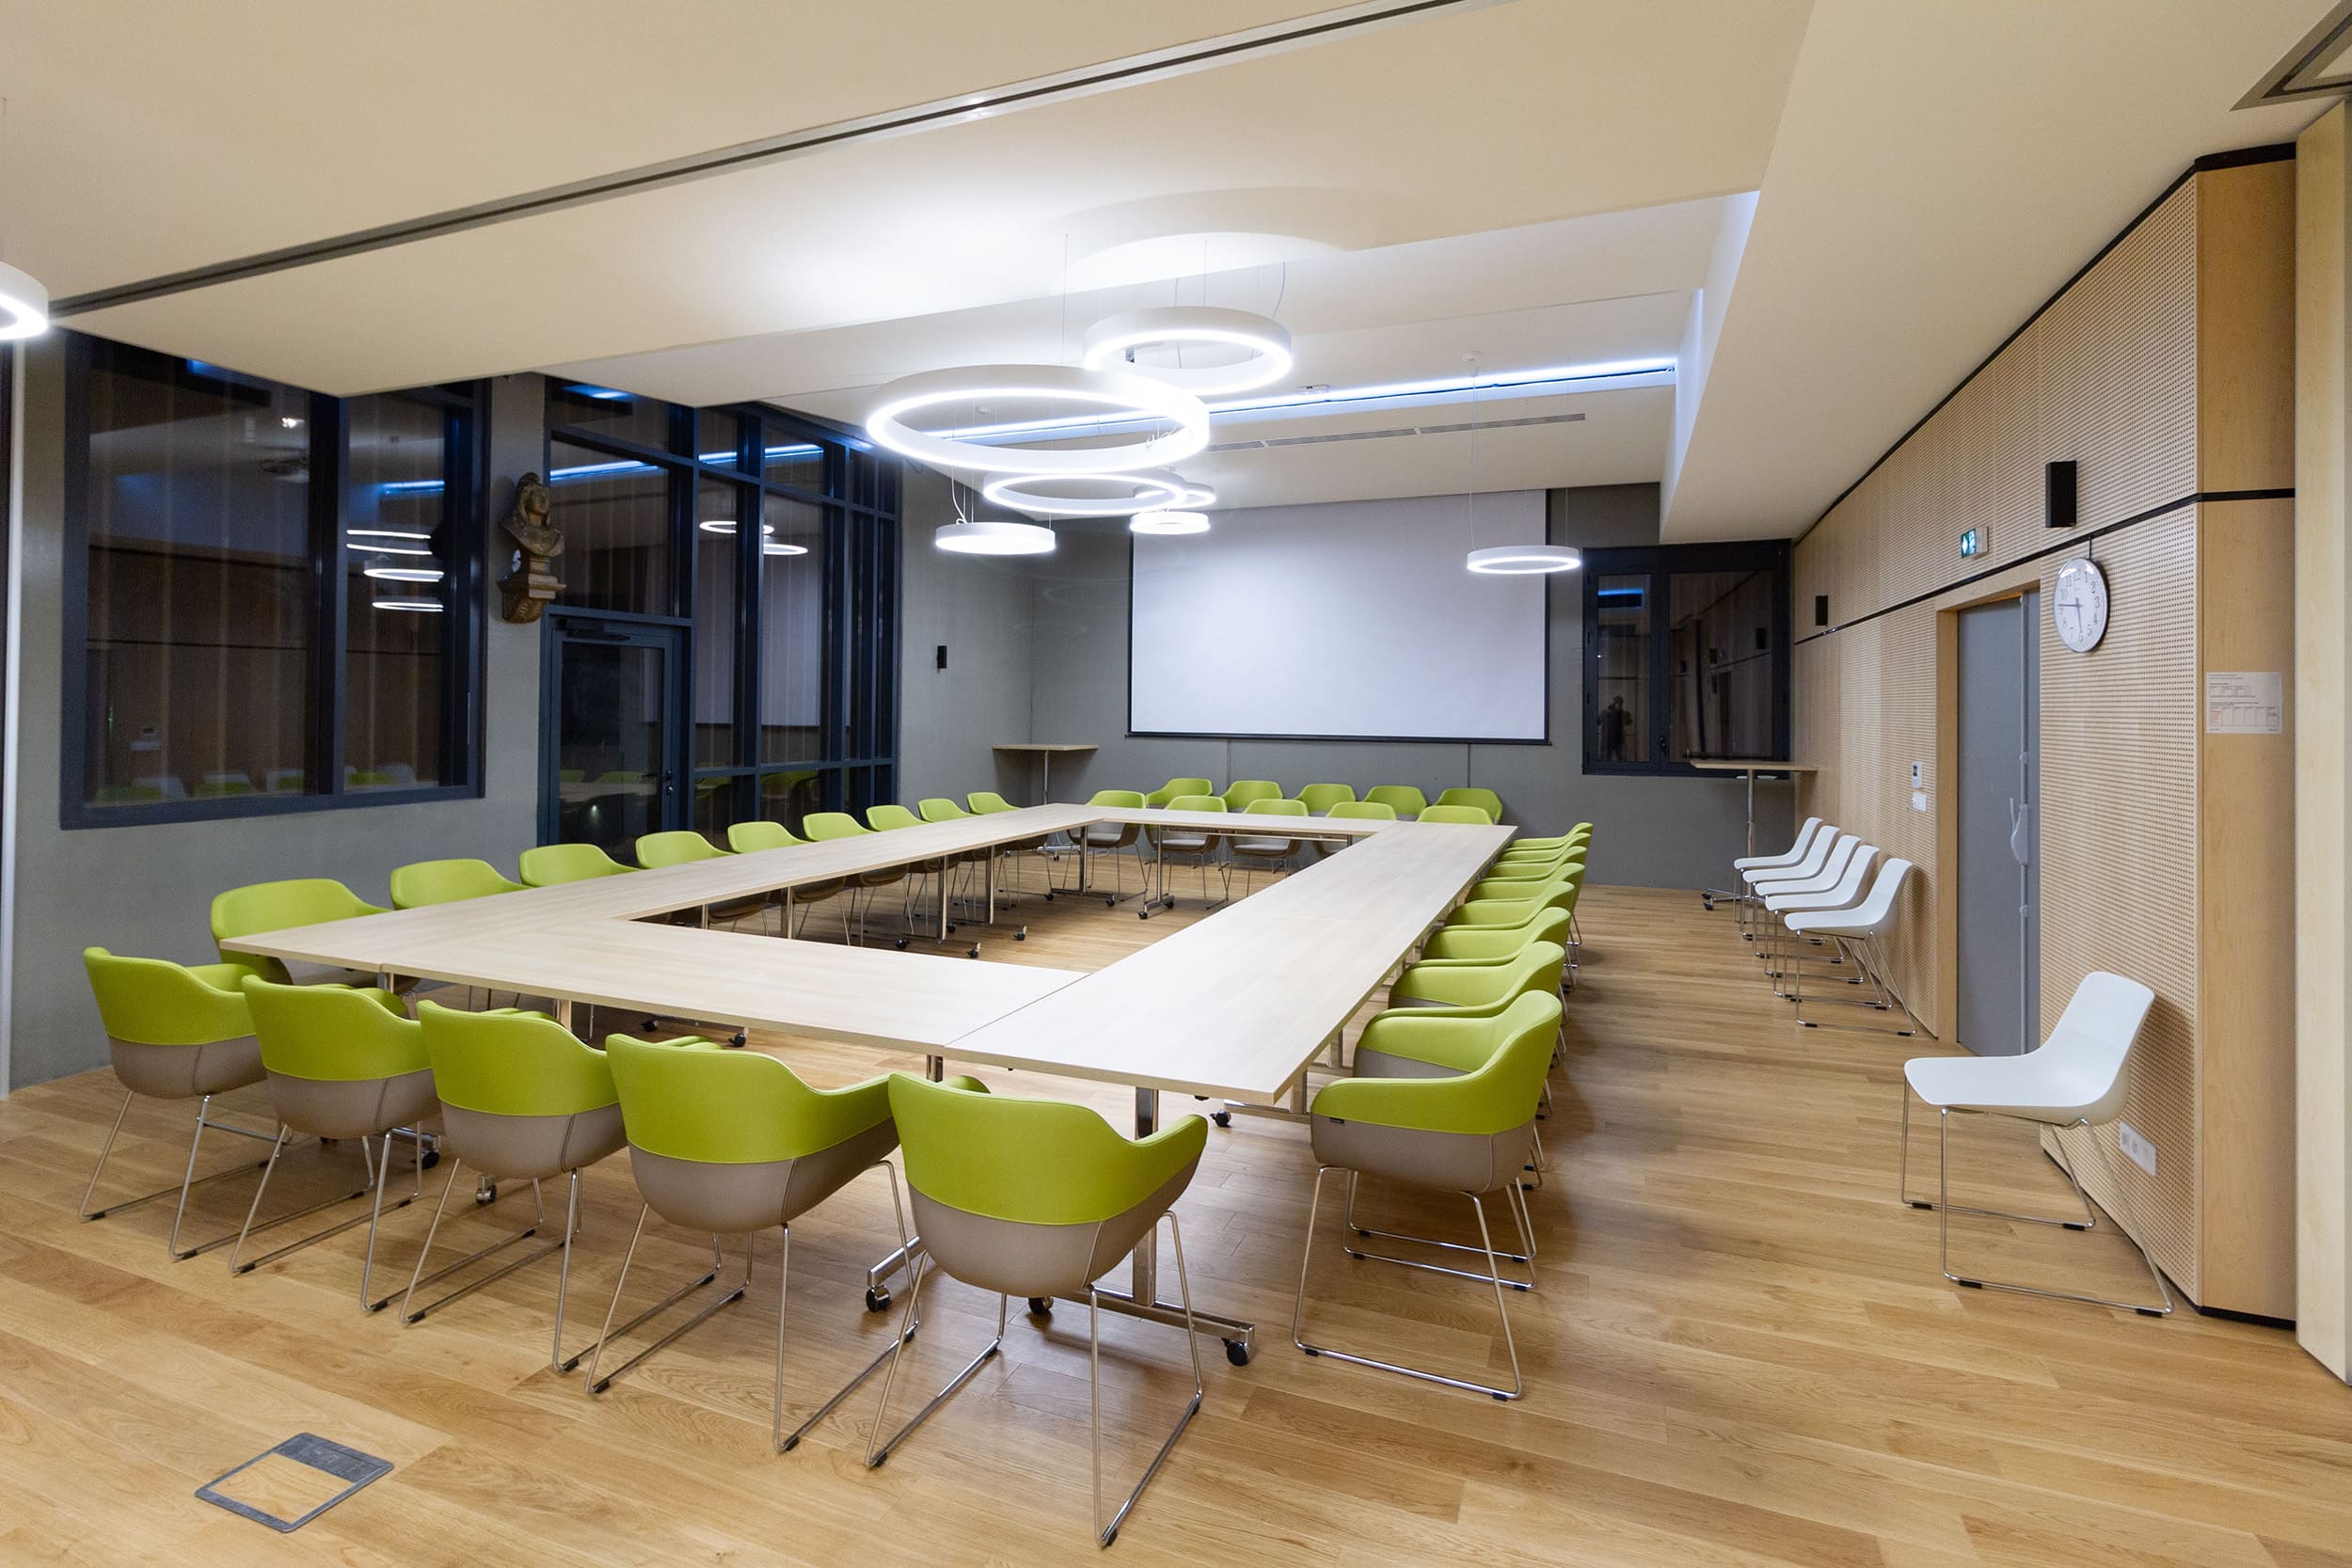 Salle de réunion pour une mairie en Savoie avec tables à plateau rabattable haut de gamme et fauteuils de conférence Design bicolore avec piétement traineau